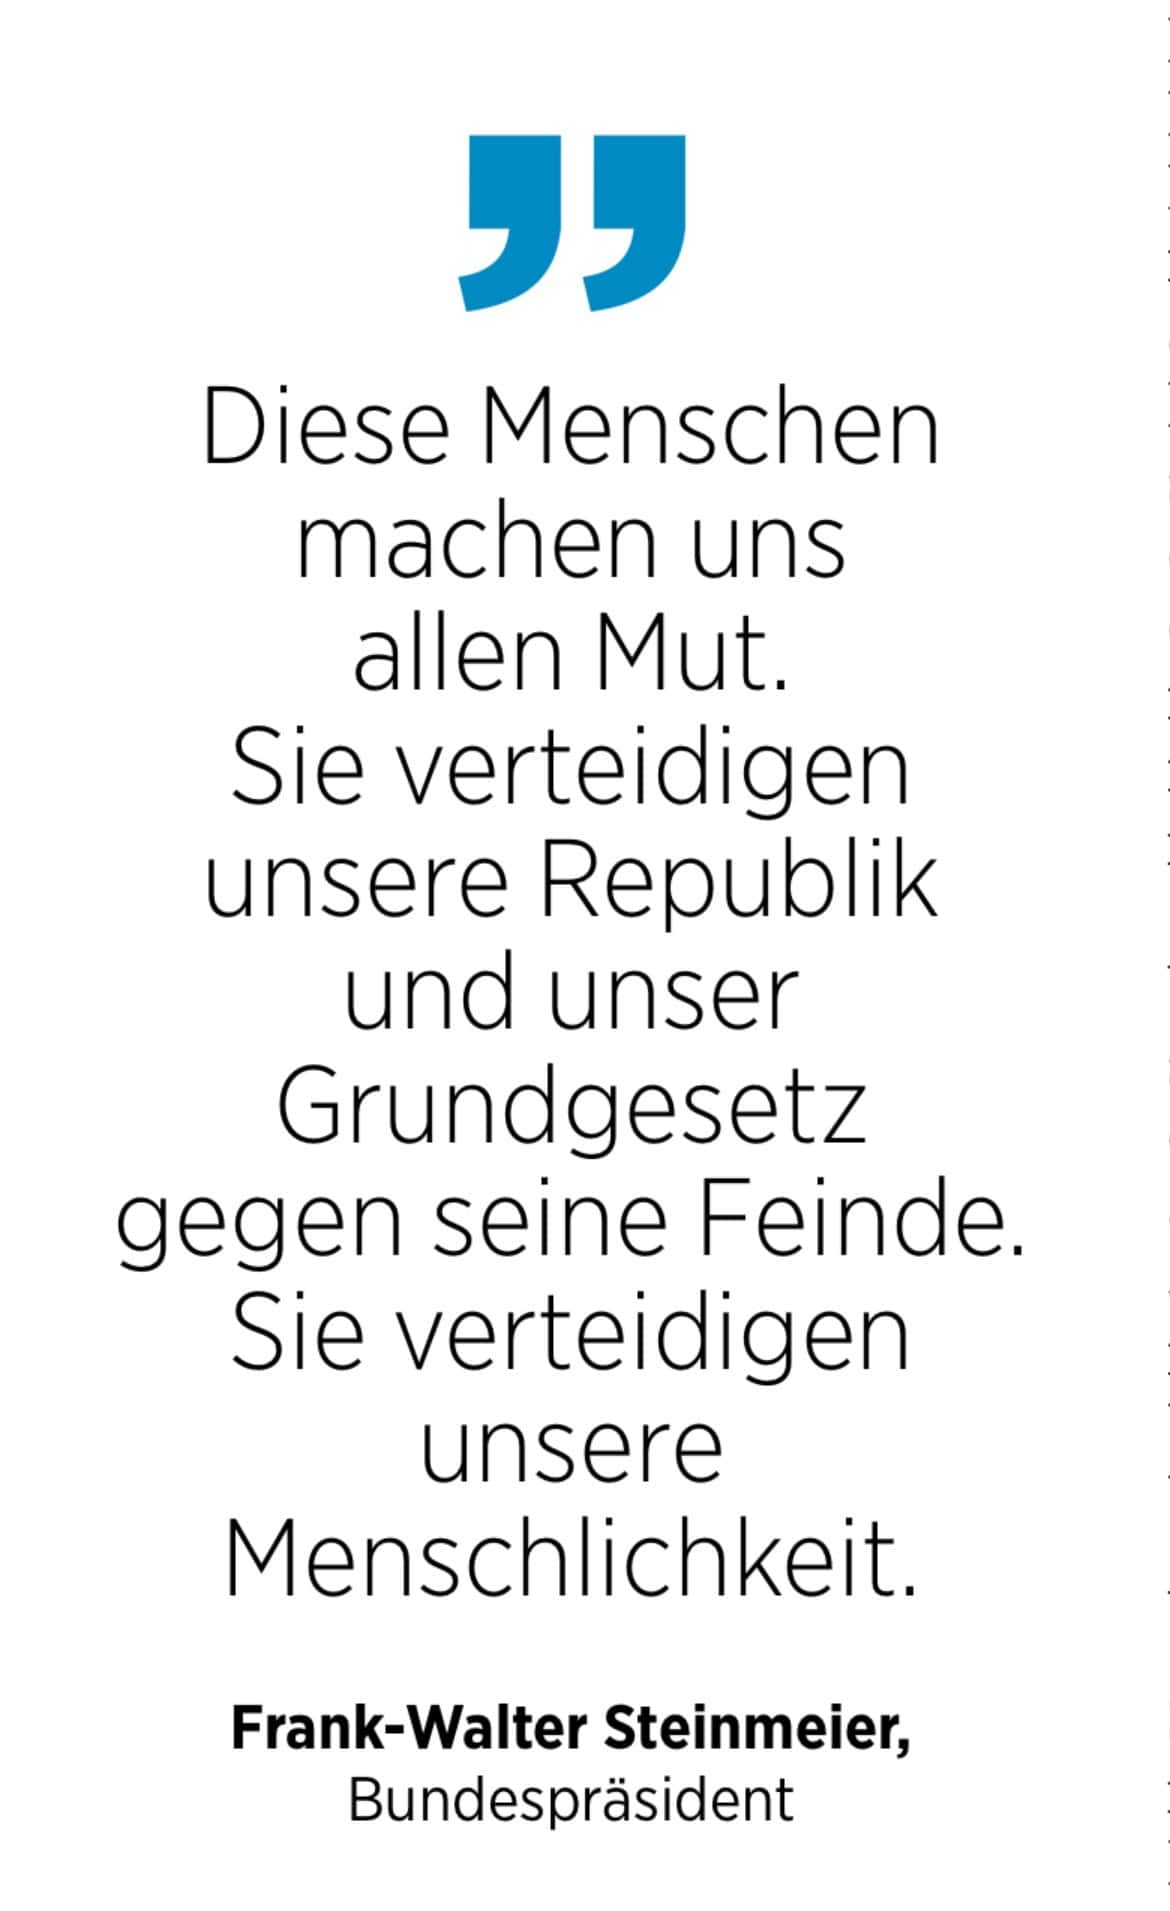 Frank-Walter Steinmeier, Bundespräsident: Diese Menschen machen uns allen Mut. Sie verteidigen unsere Republik und unser Grundgesetz gegen seine Feinde. Sie verteidigen unsere
Menschlichkeit.